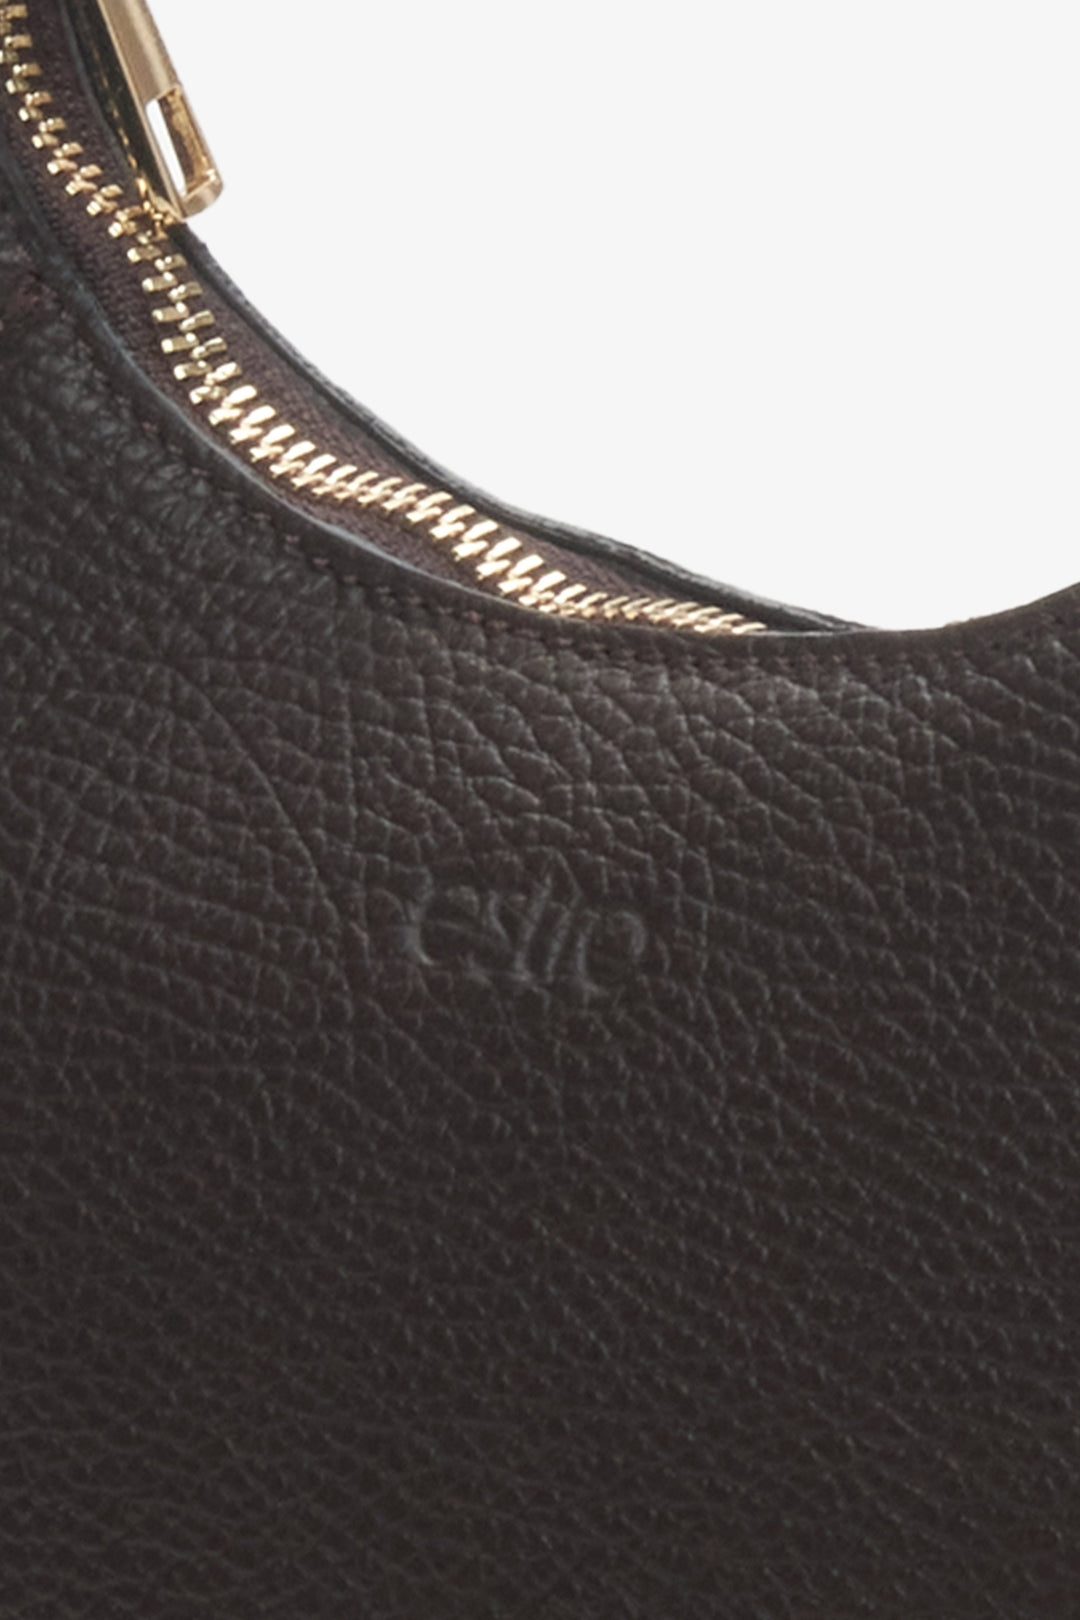 Skórzana torebka damska na ramię w kolorze ciemnobrązowym Estro - zbliżenie na detal.